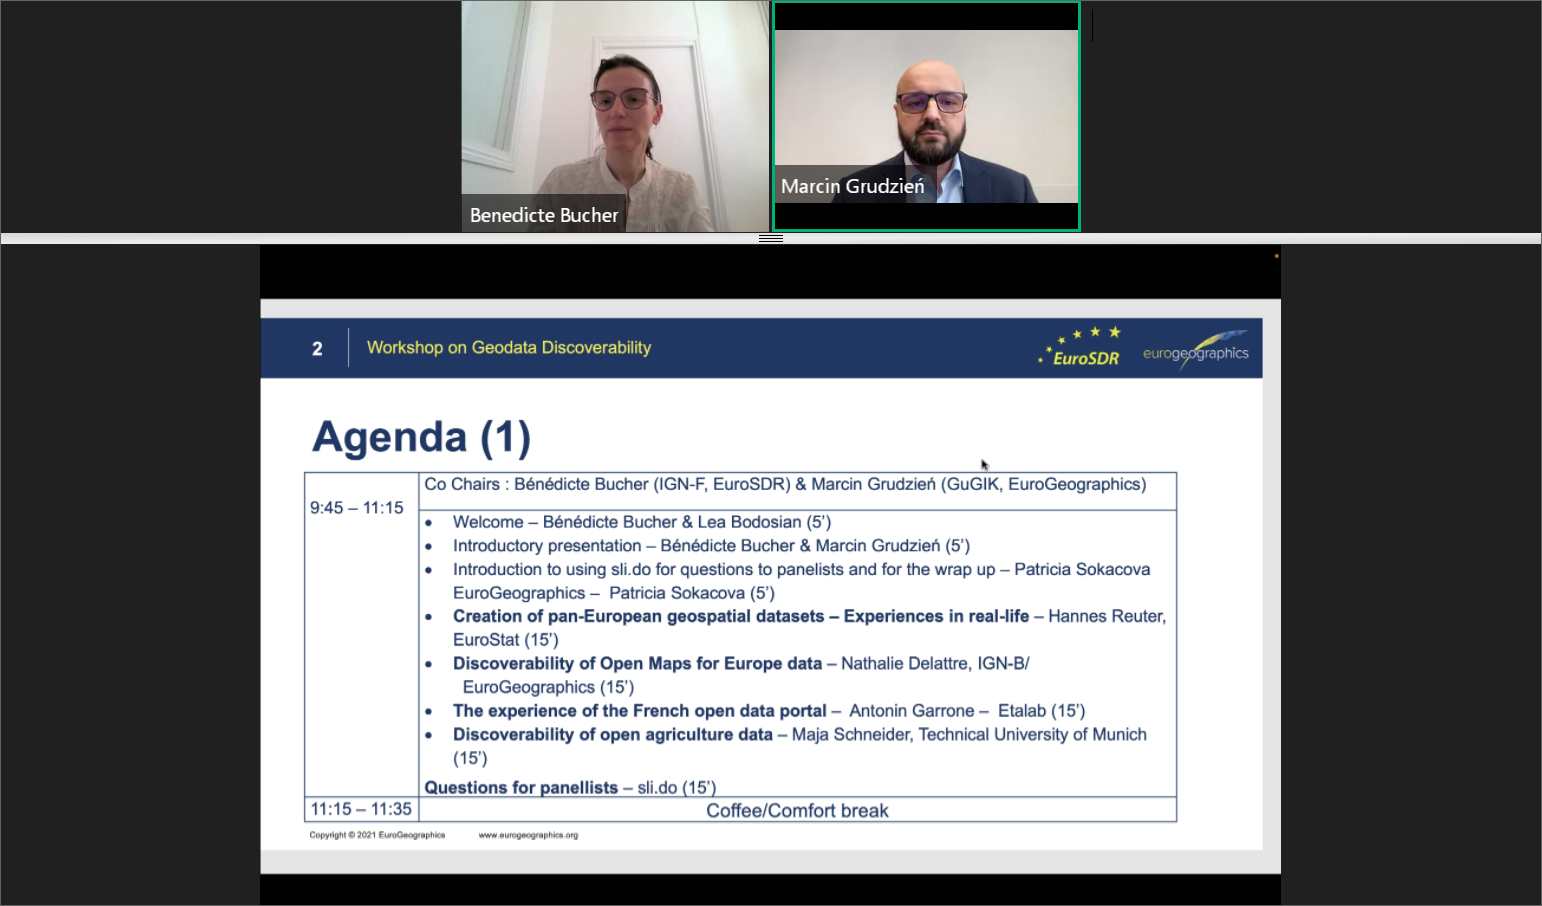 Zrzut ekranu z programu do prowadzenia konferencji online, który przedstawia fragment agendy wydarzenia oraz prowadzących spotkanie.